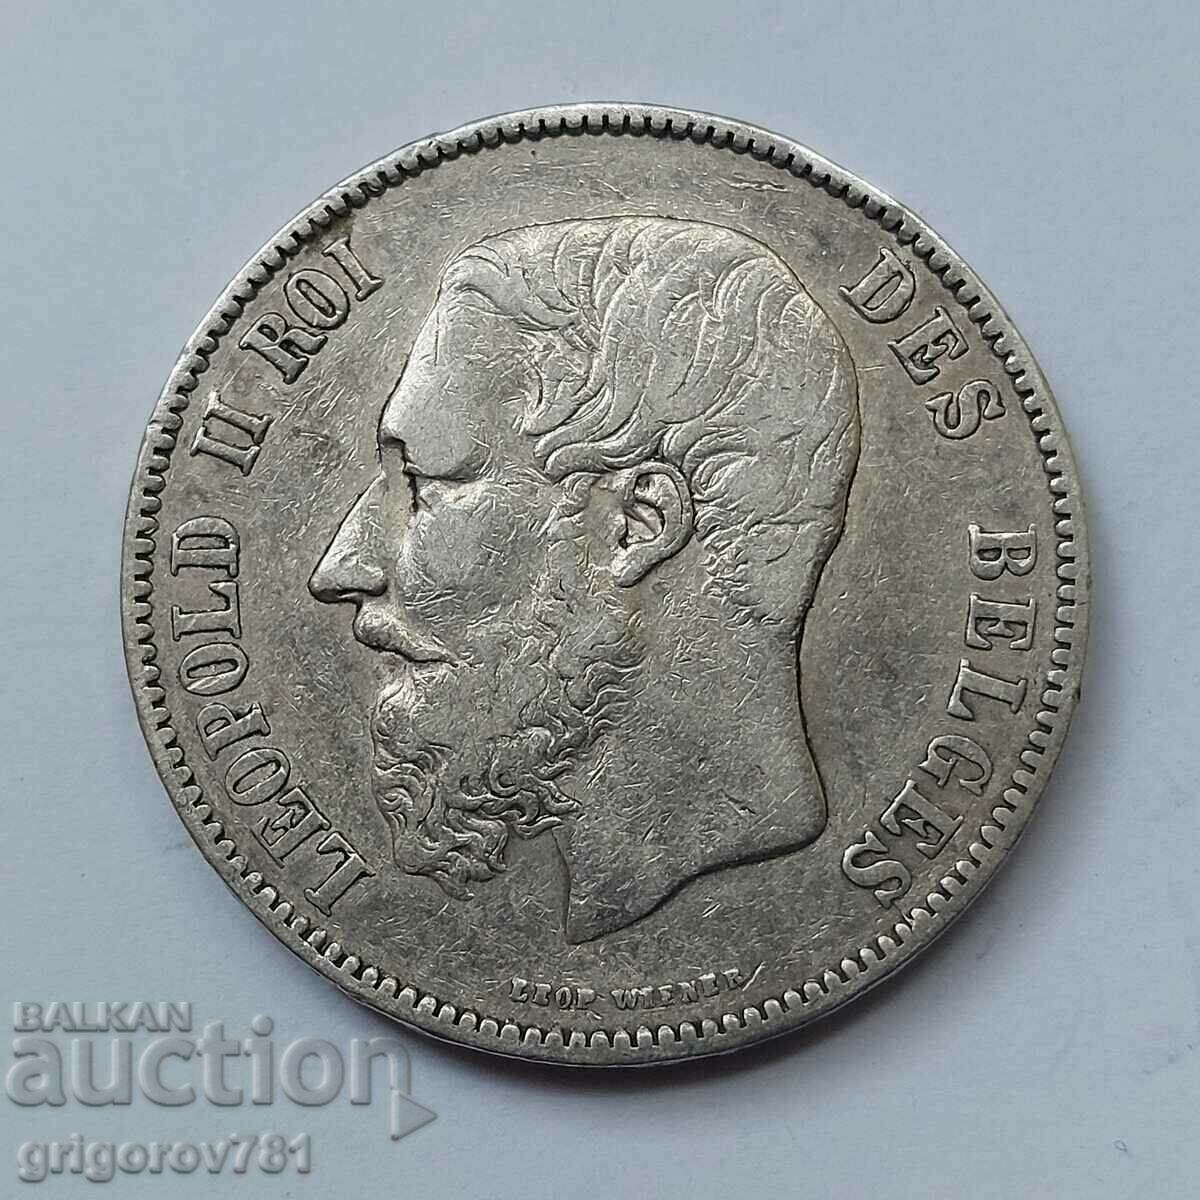 Ασημένιο 5 Φράγκα Βέλγιο 1870 - Ασημένιο νόμισμα #99